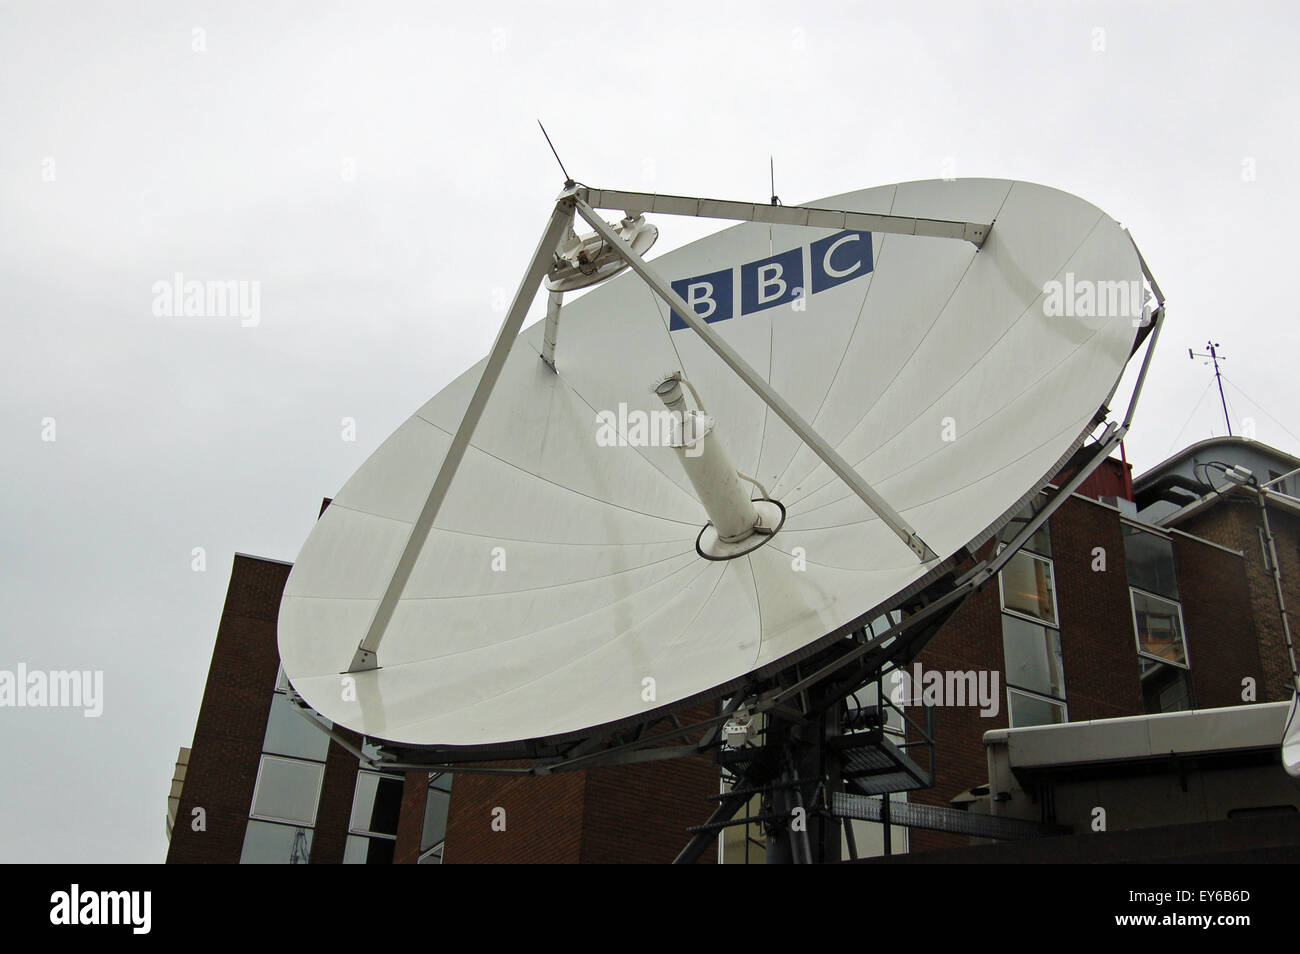 Londres, Royaume-Uni - 18 août 2007 : une grande antenne parabolique de télévision de la BBC au Centre à Shepherd's Bush, à l'ouest de Londres. Enguise l Banque D'Images